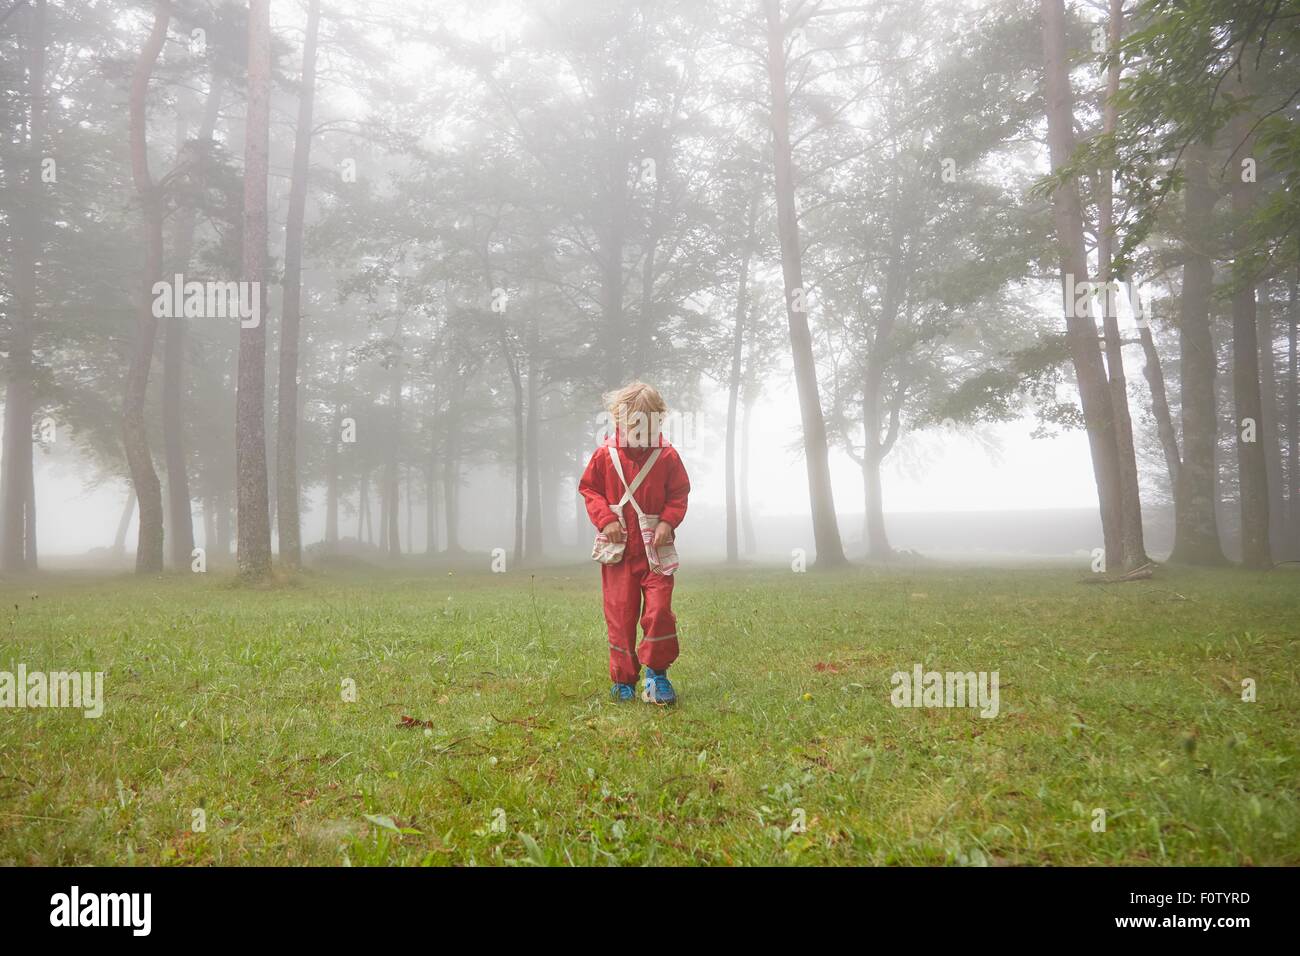 Boy vestidos de rojo impermeable, buscando en el brumoso paisaje Foto de stock